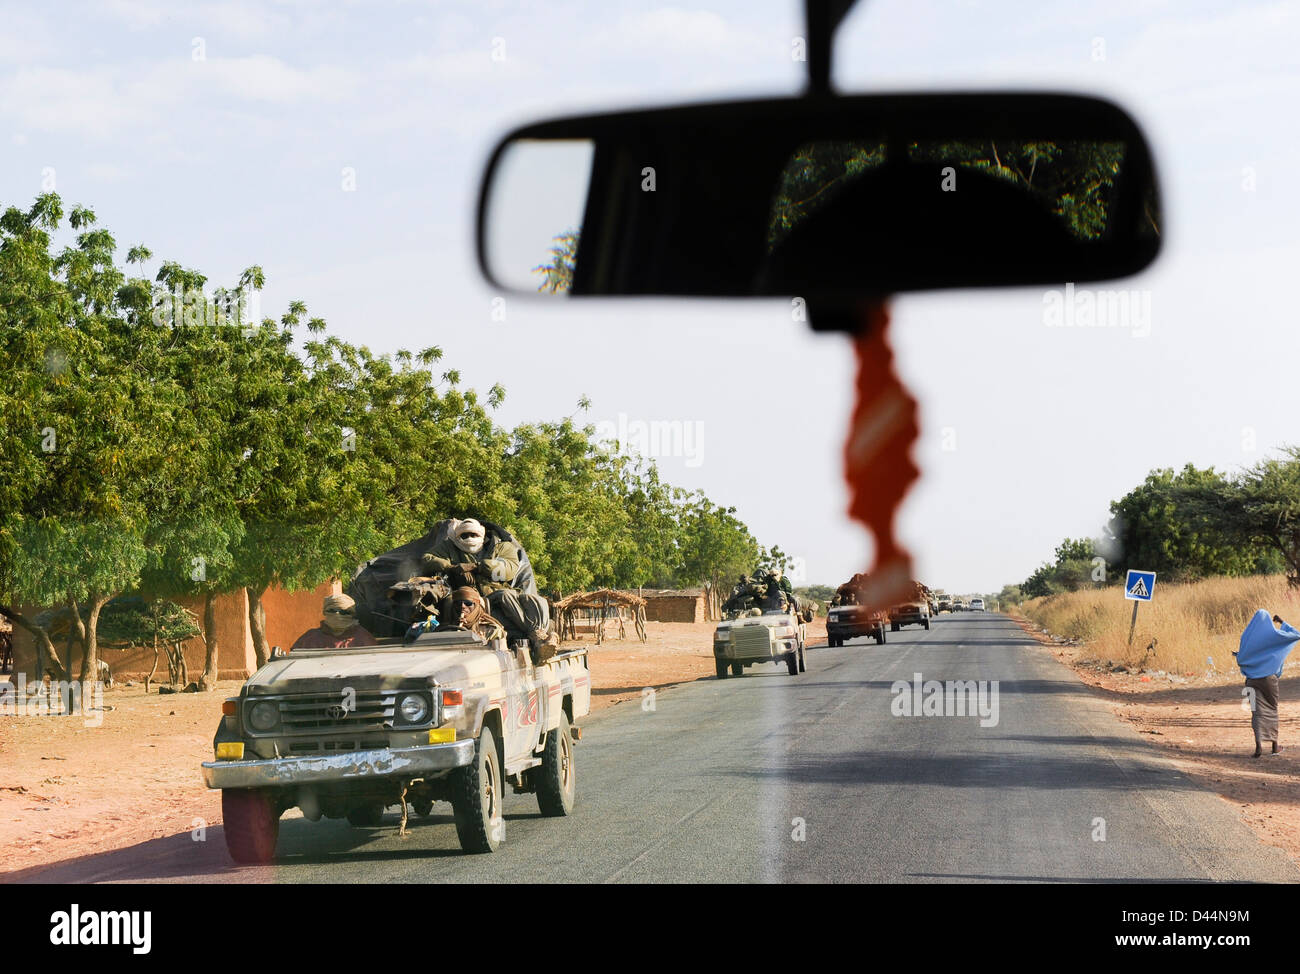 NIGER, environ 2000 soldats armés tchadiens du Tchad avec Toyota sur le chemin du Mali, ils font partie de la mission de la CEDEAO dans la guerre du Mali en 2012 pour soutenir les troupes françaises contre les groupes terroristes islamistes Banque D'Images